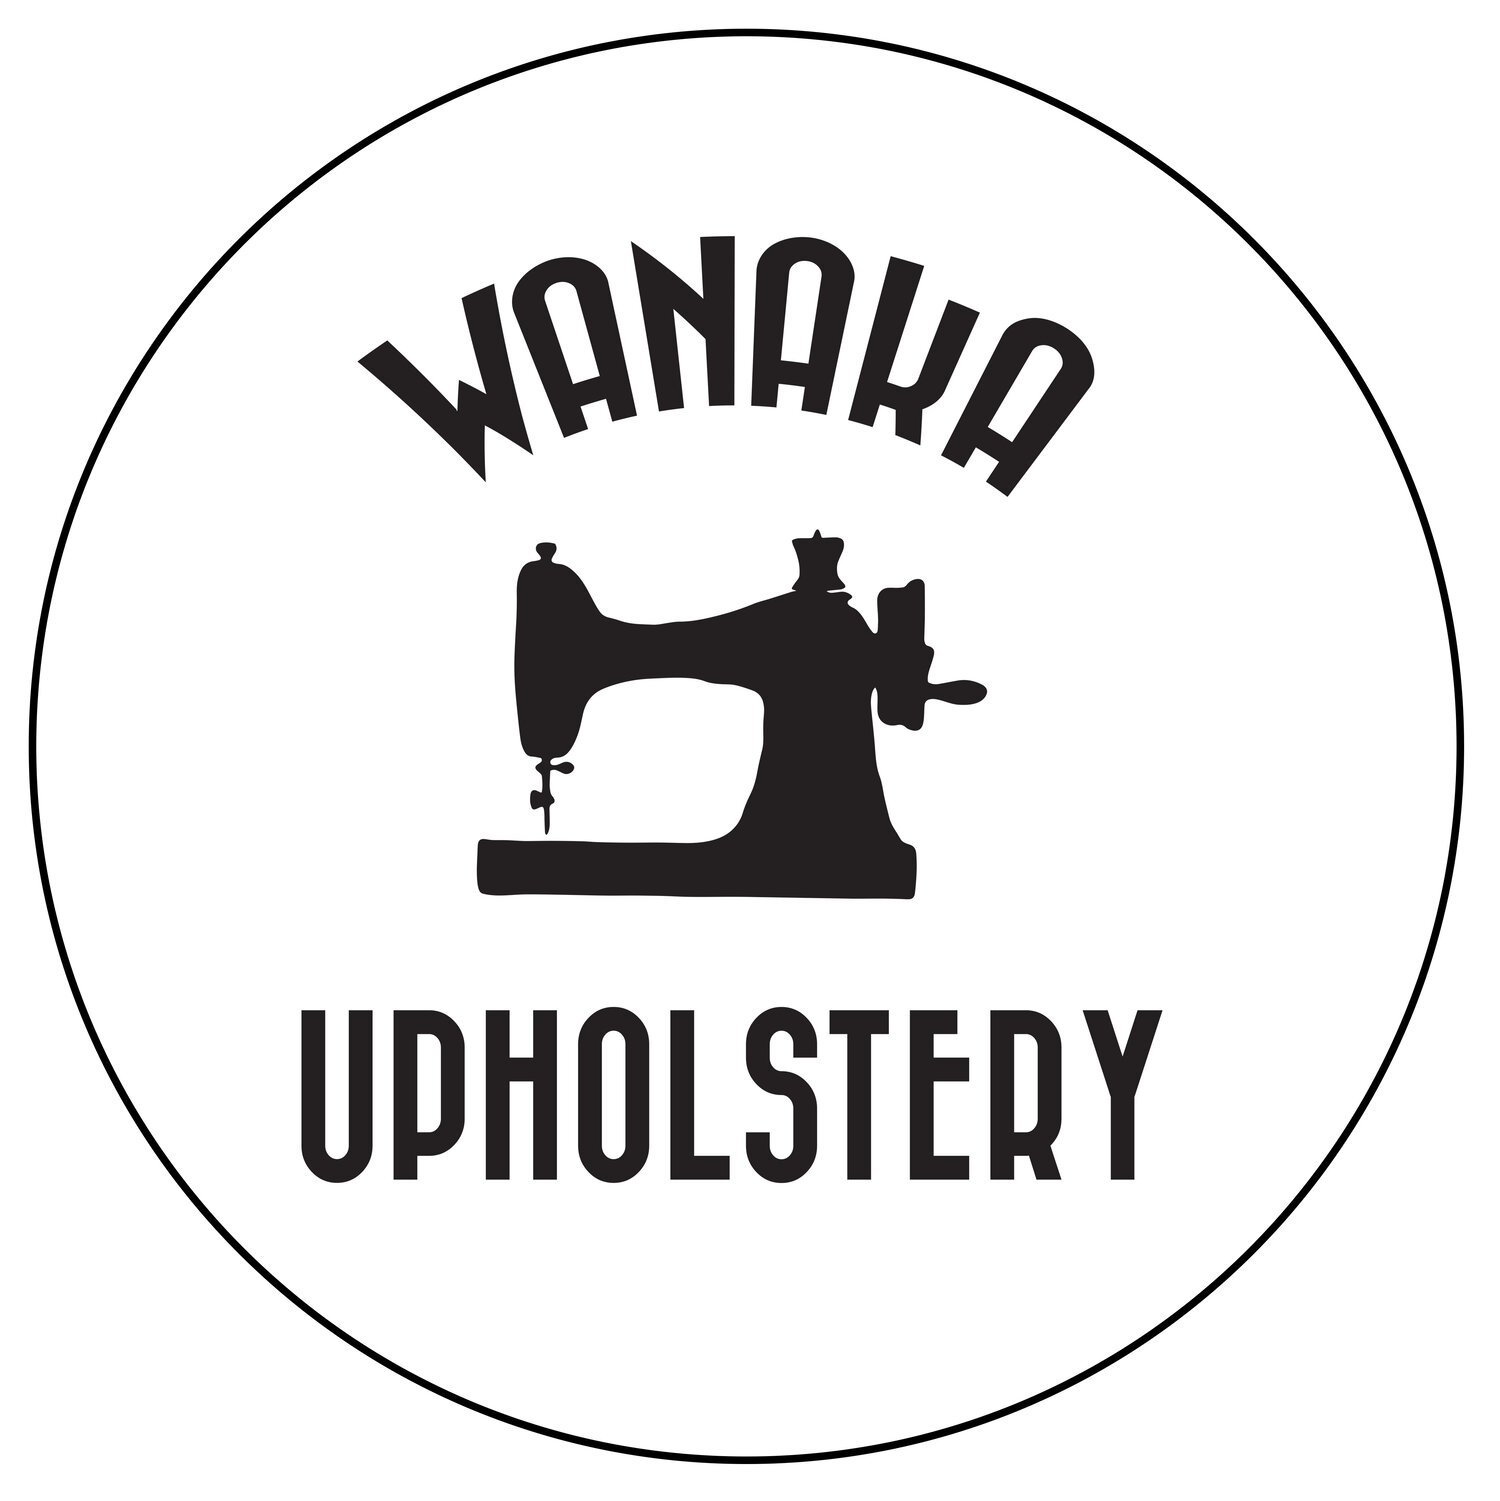 Wanaka Upholstery